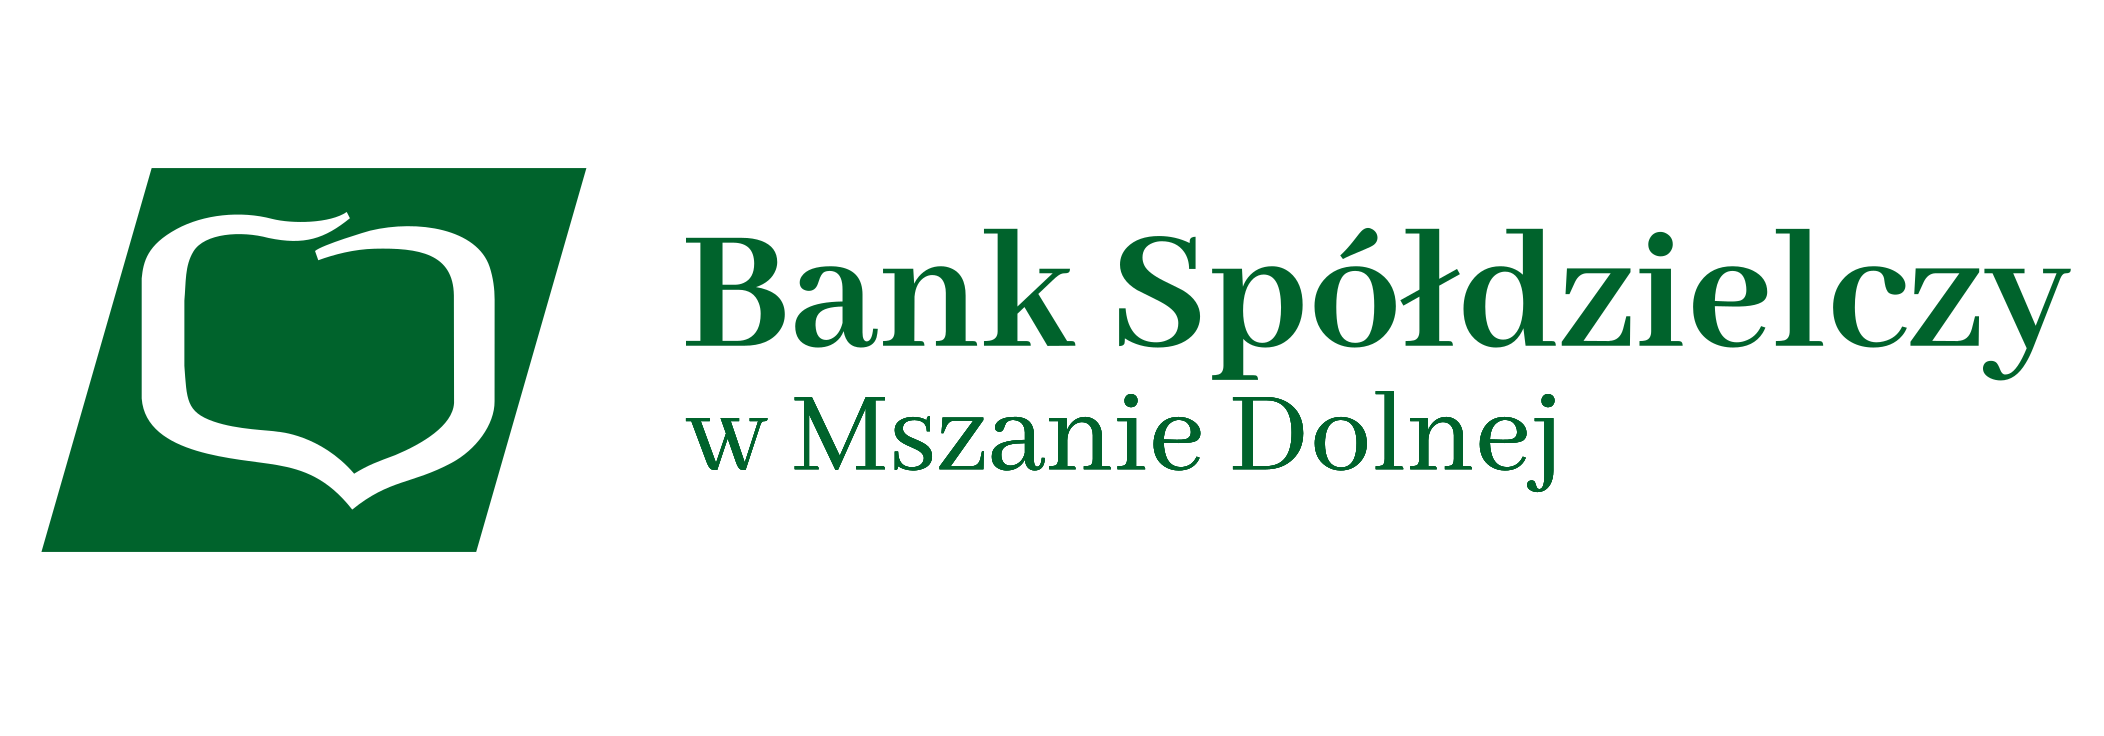 Bank Spółdzielczy w Mszanie Dolnej